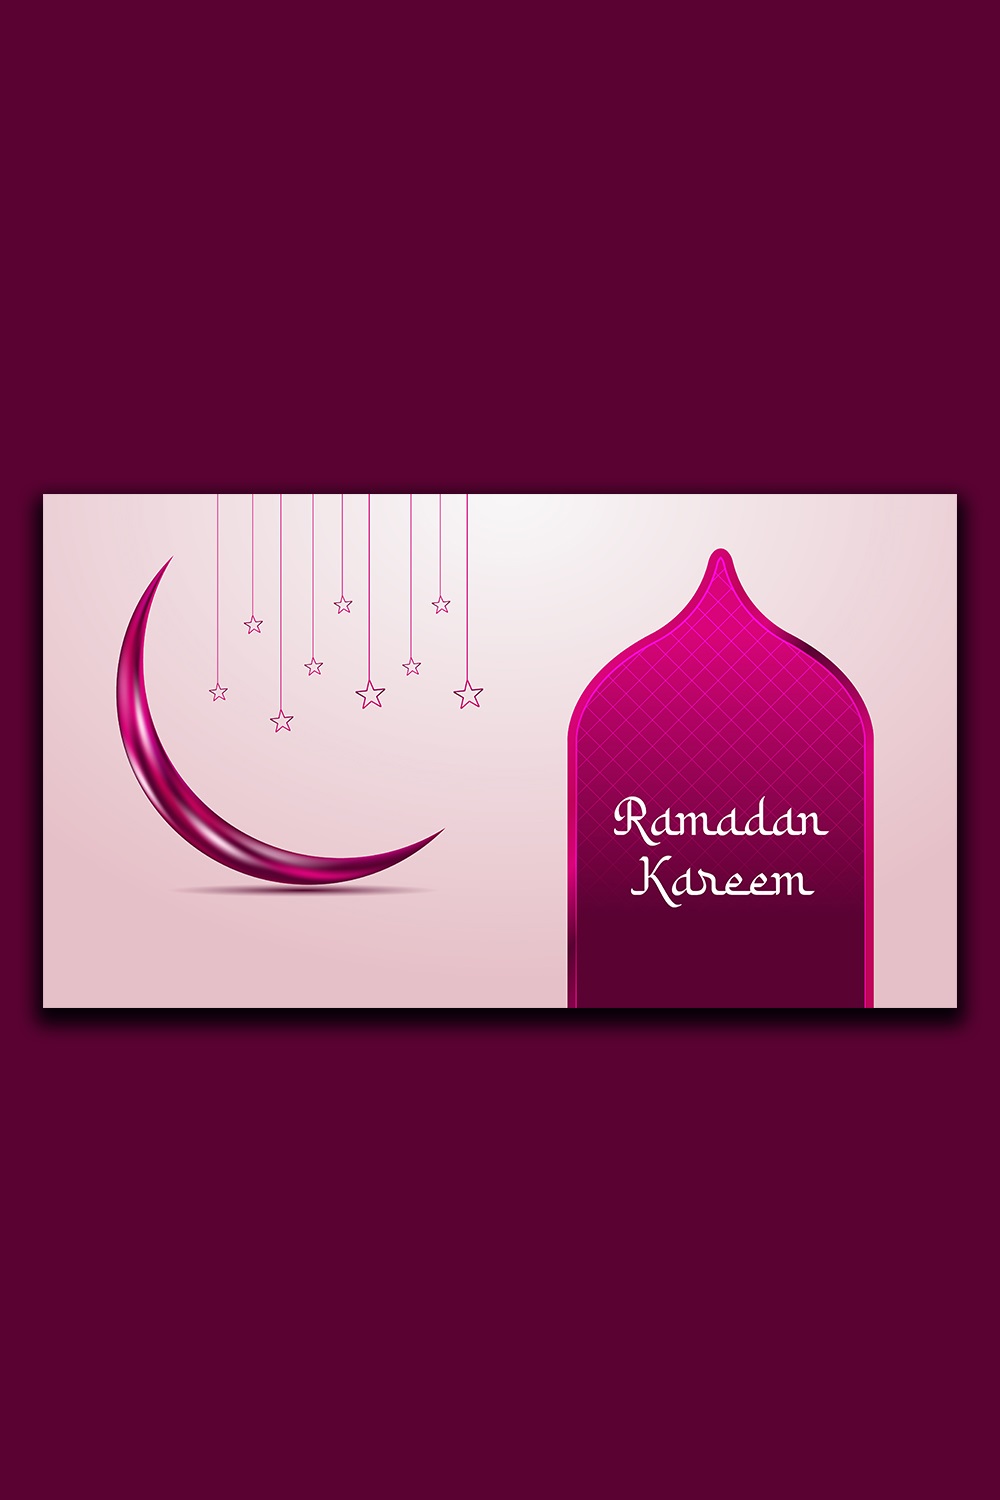 Colorful Ramadan Kareem greetings banner design pinterest preview image.